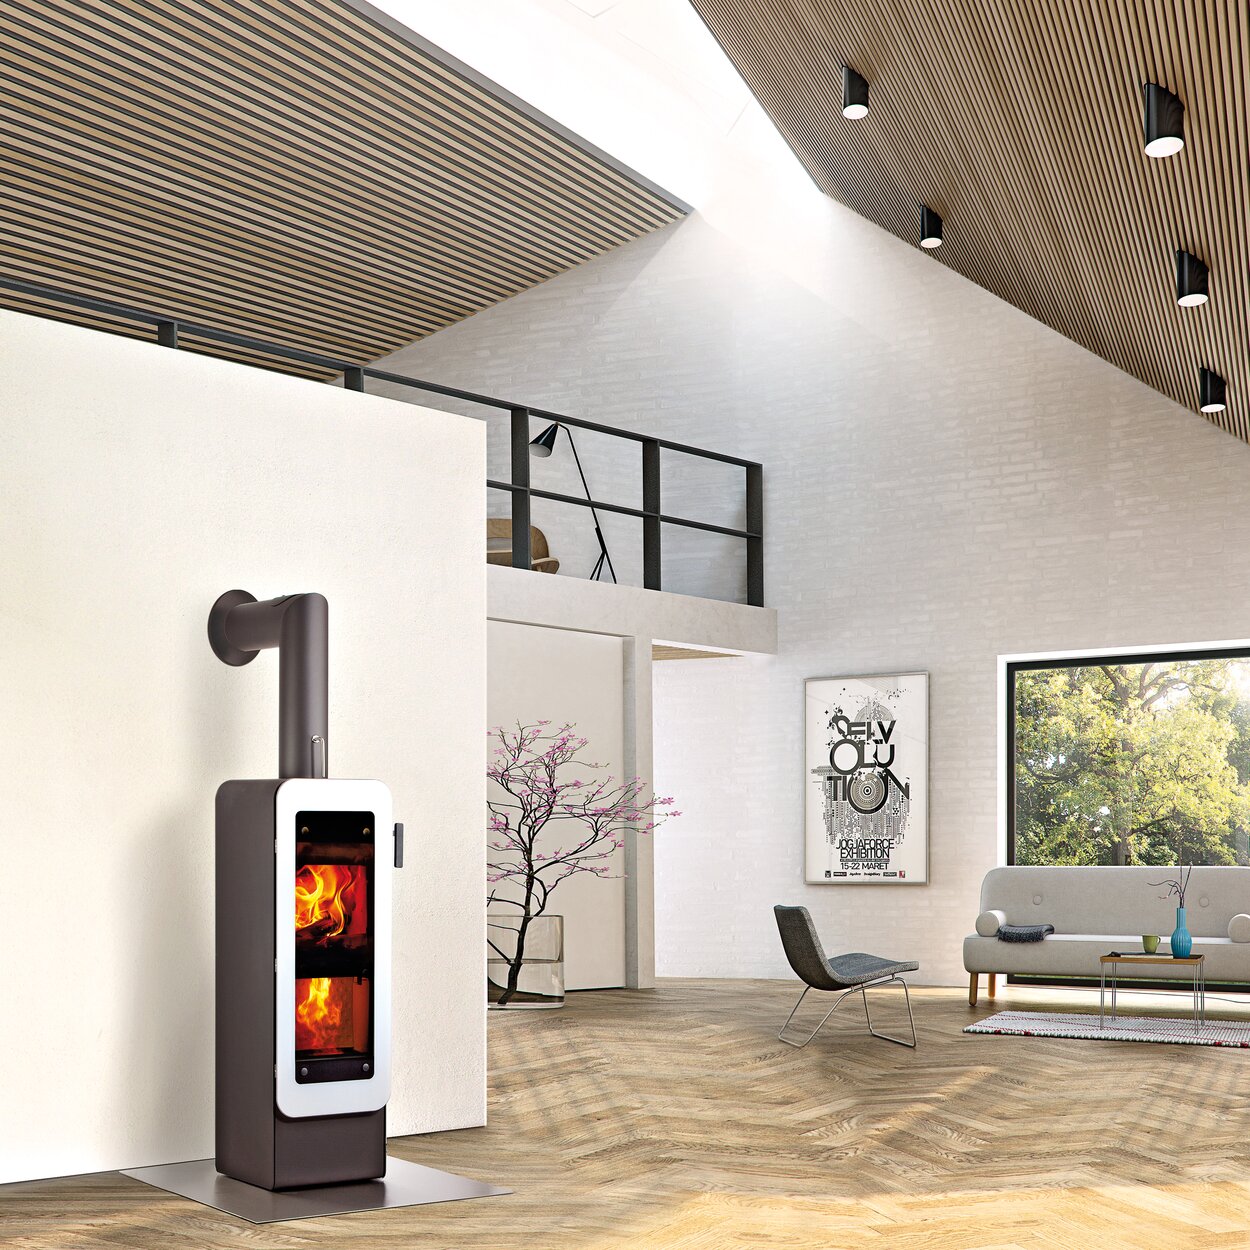 Stufa a legna bionic fire EVO nel colore nero con porta in vetro bianco in un moderno design a soppalco